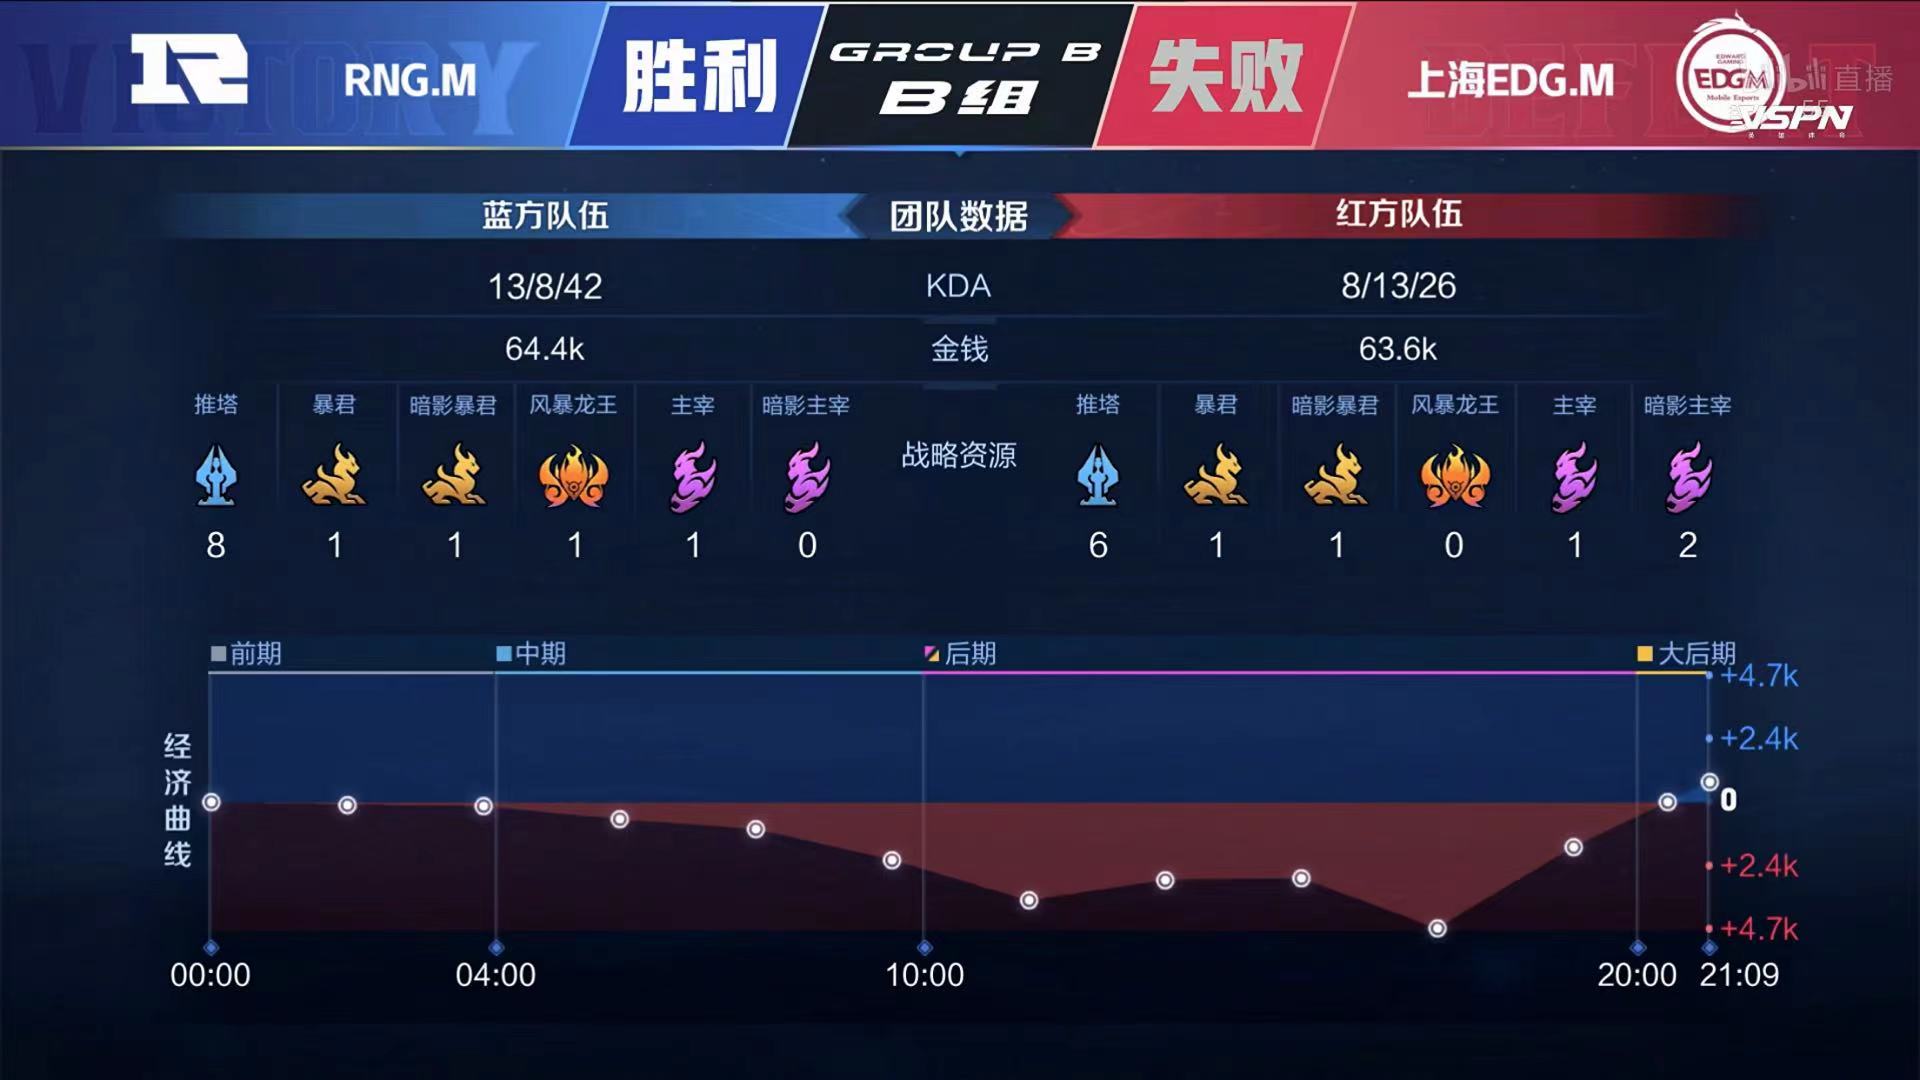 [战报] 老牌五人回归 RNG.M拿到赛季首胜